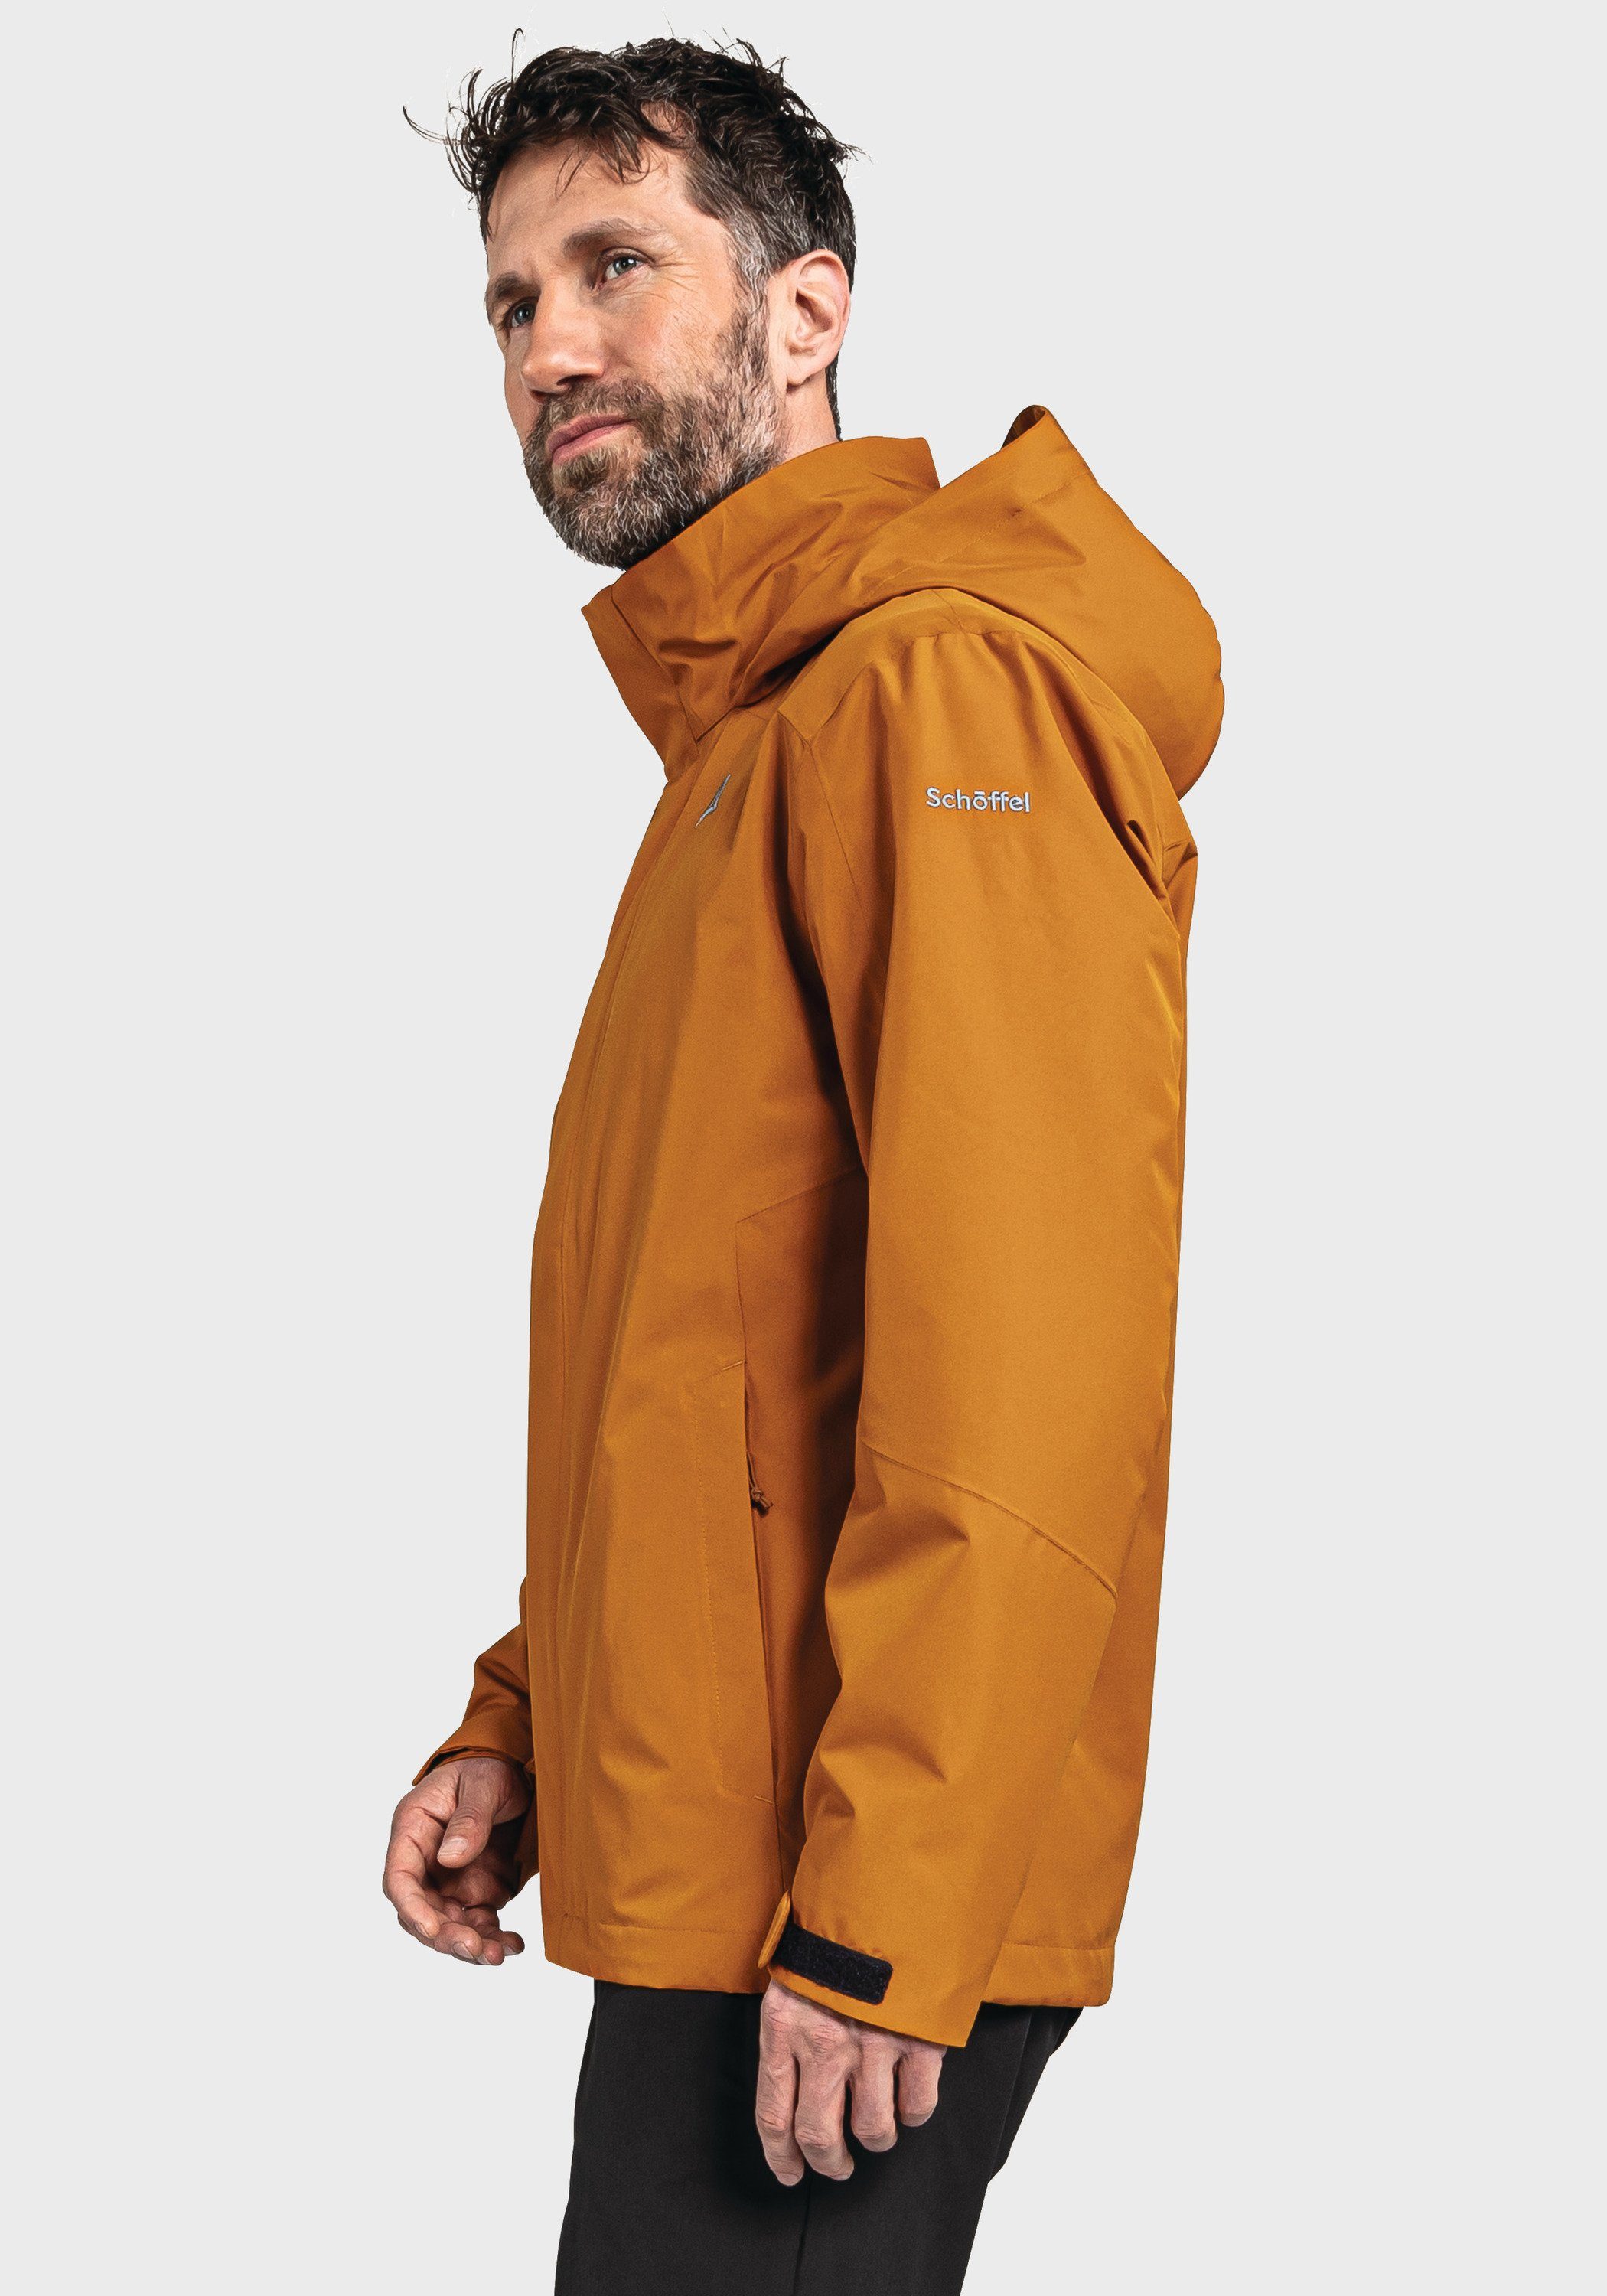 Jacket M Schöffel Partinello Doppeljacke orange 3in1